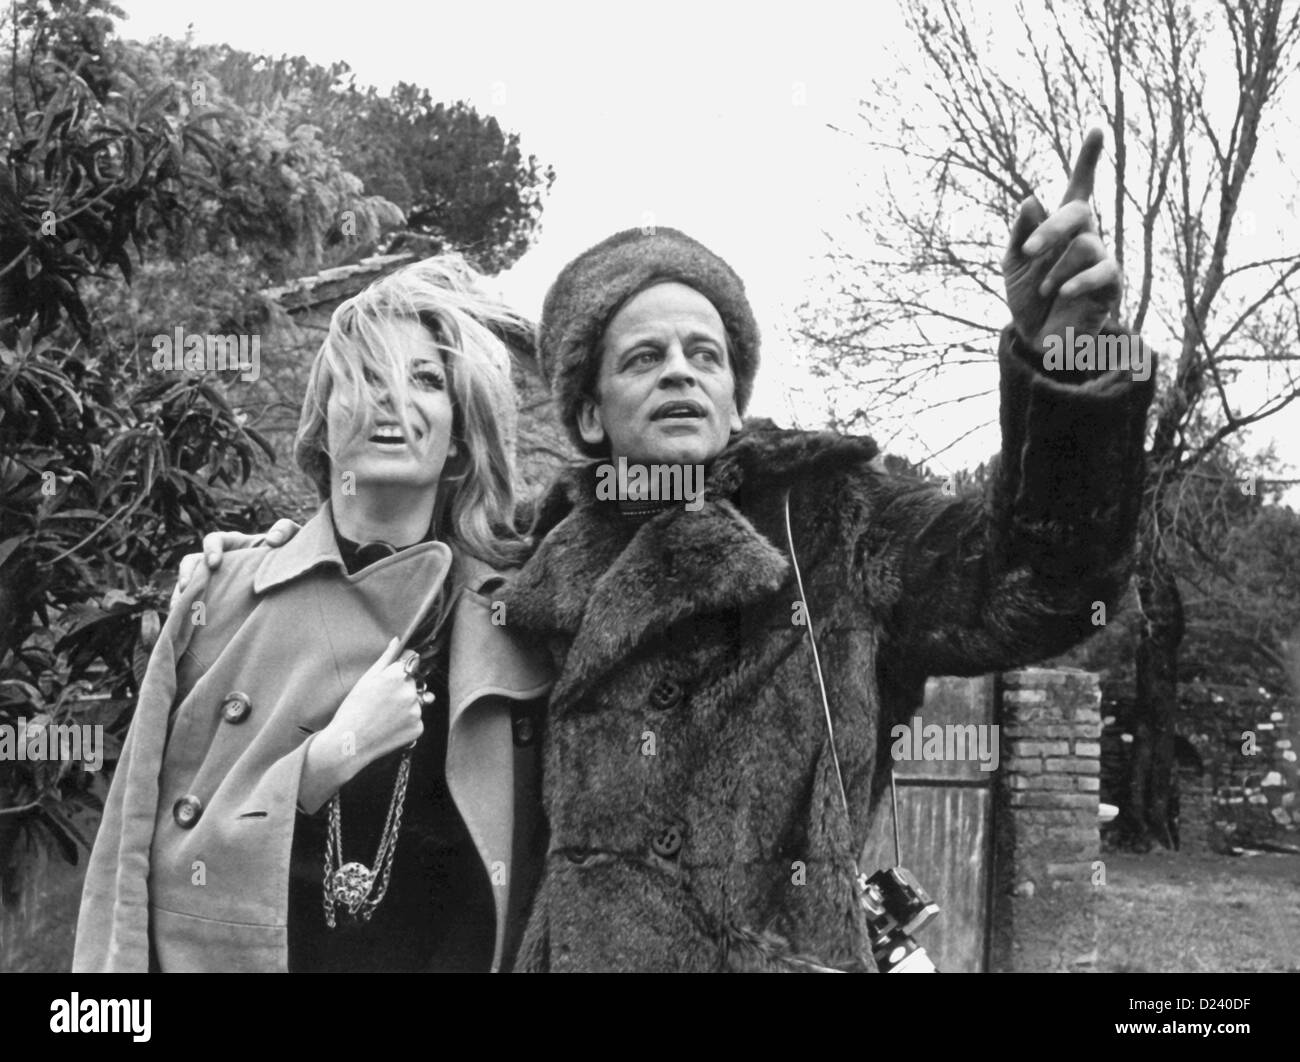 (Dpa file) - attore tedesco Klaus Kinski e attrice Christiane Krueger mostrato durante le riprese di Edgar Wallace film 'a doppia faccia' ('Double volto"), 1969. Un'enfant terrible" dell'industria cinematografica, Kinski's film includono 'Buddy Buddy', 'per pochi dollari in più", nonché "Aguirre, der Zorn Gottes' ('Aguirre: l'ira di Dio") e 'Nosferatu: Phantom der Nacht' ('Nosferatu il vampiro"). Kinski è nato il 18 ottobre 1926 a Danzica, Germania (ora Danzica, Polonia) sotto il nome di Nikolaus Guenther Nakszynski e morì il 23 novembre 1991 in Lagunitas, California, di un attacco di cuore. Foto Stock